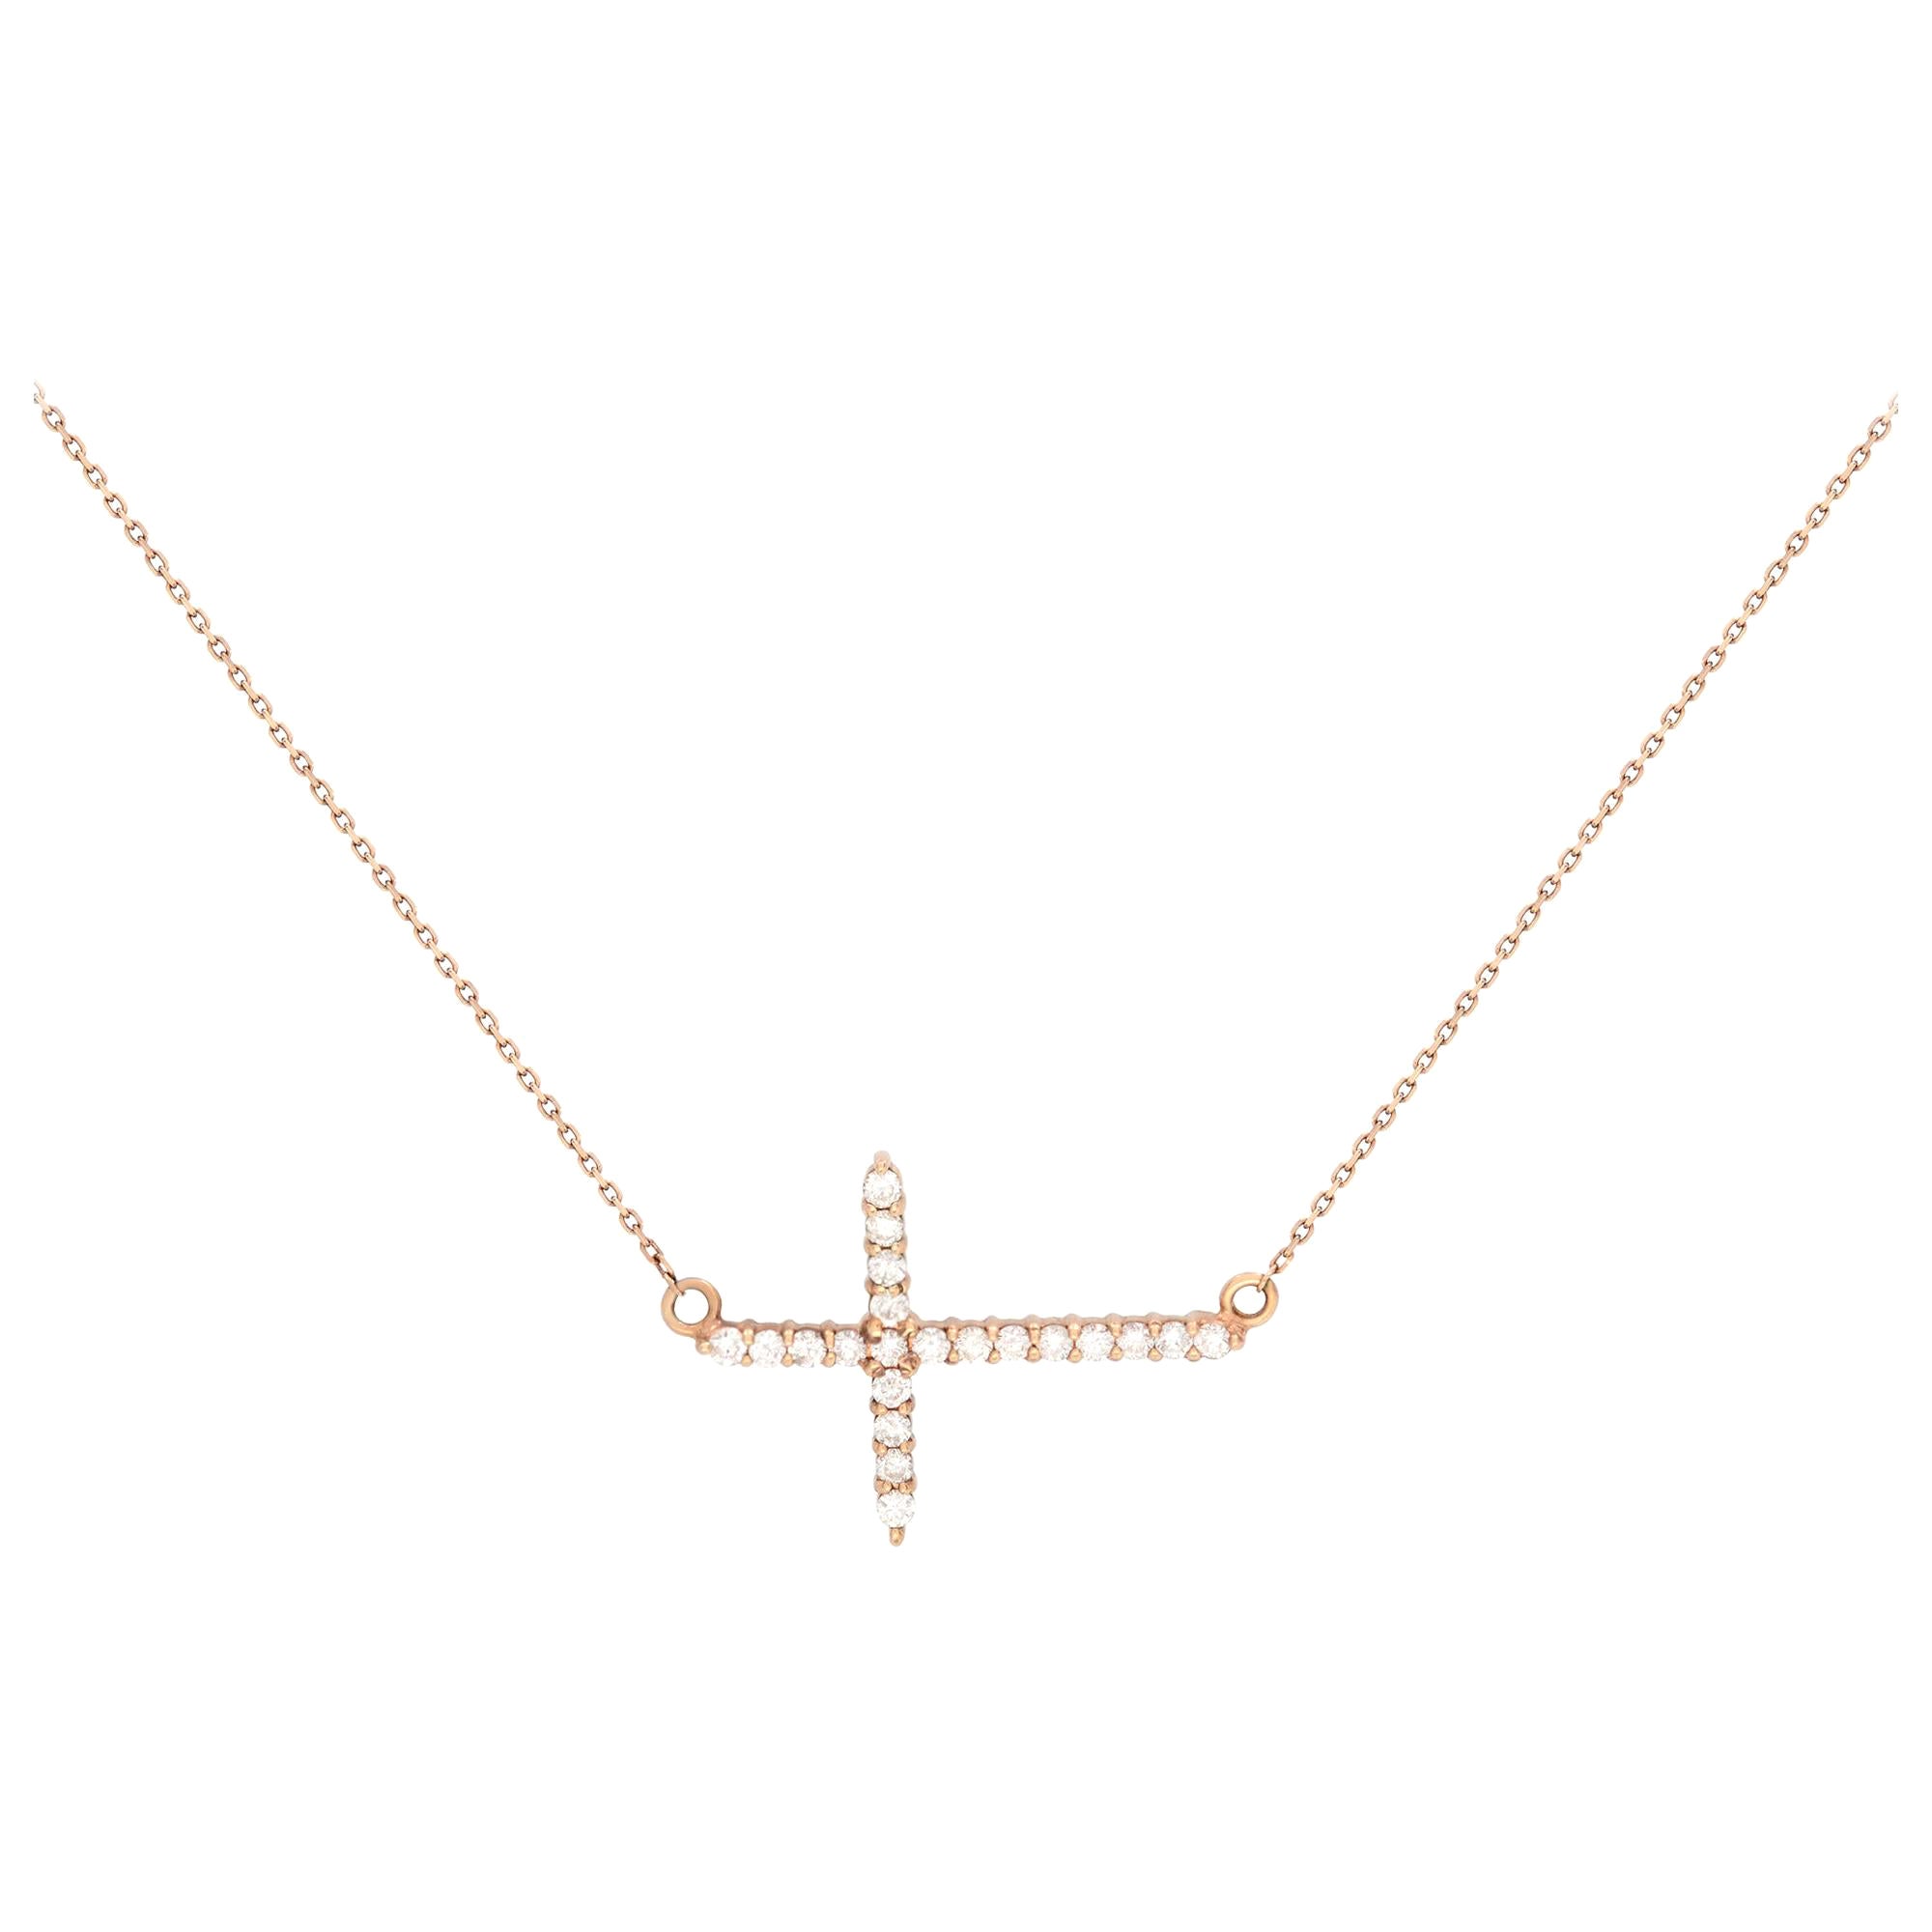 Rachel Koen 14K Rose Gold Diamond Ladies Side-Way Cross Necklace 0.28cttw